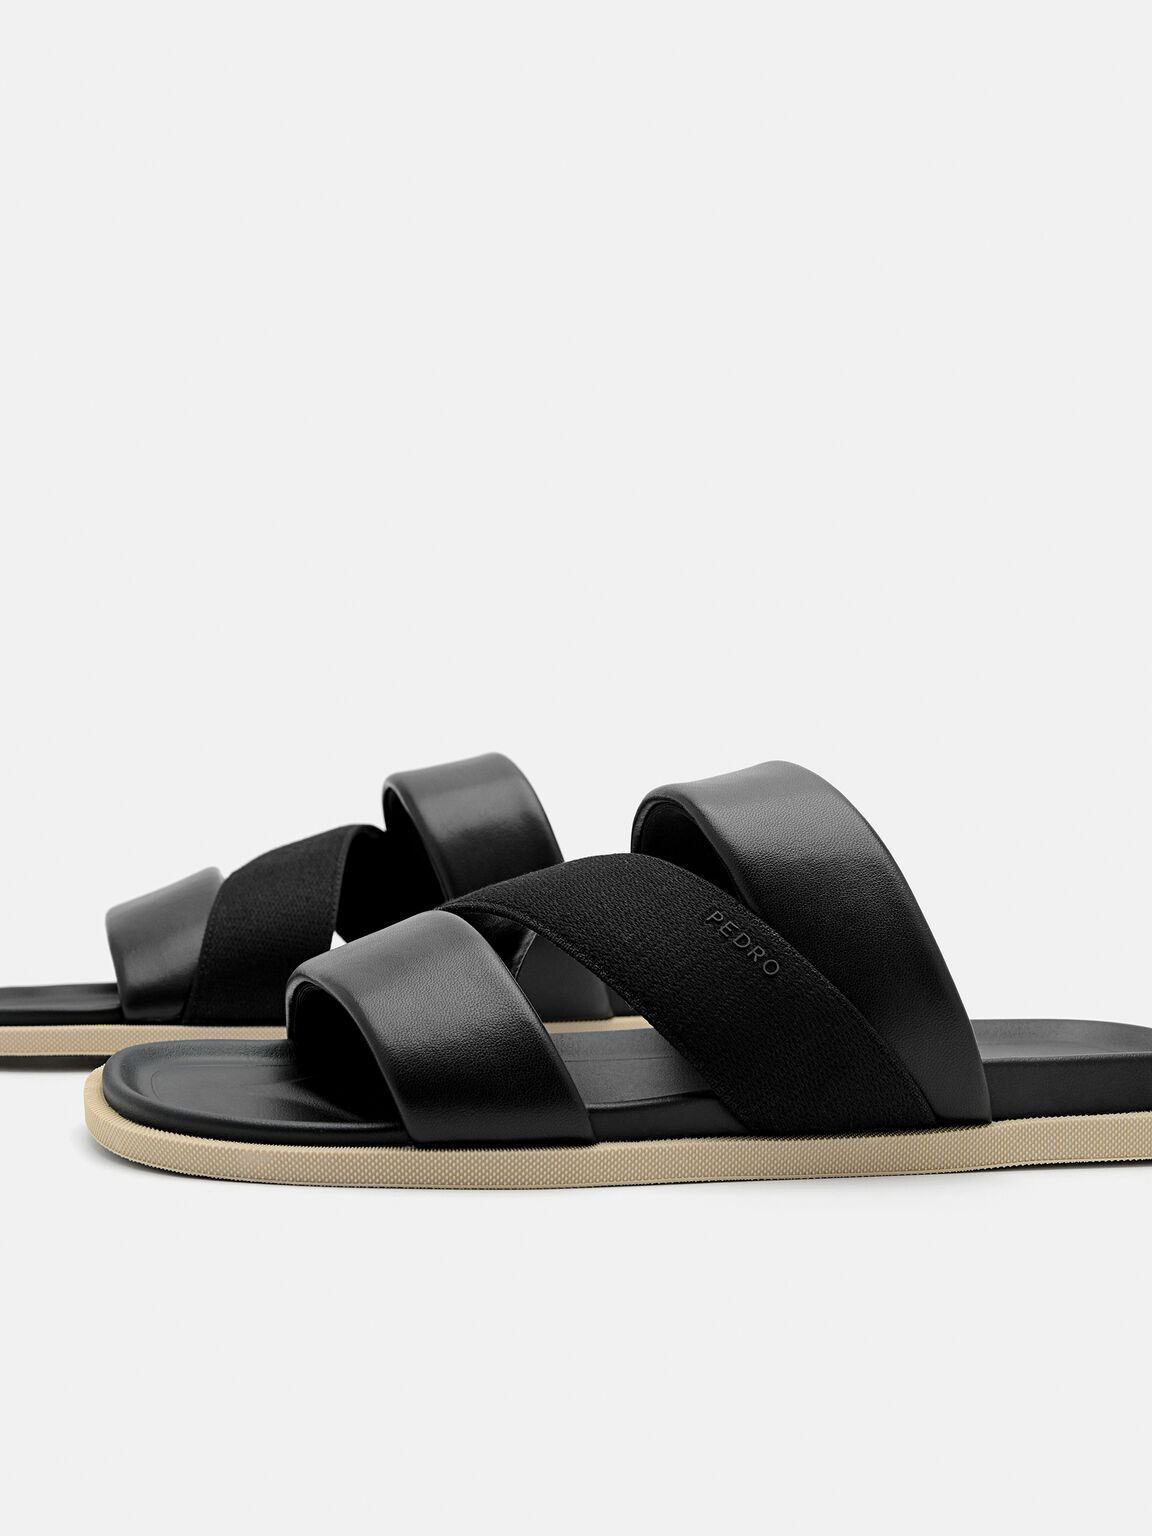 Tri-Band Slide Sandals, Black, hi-res